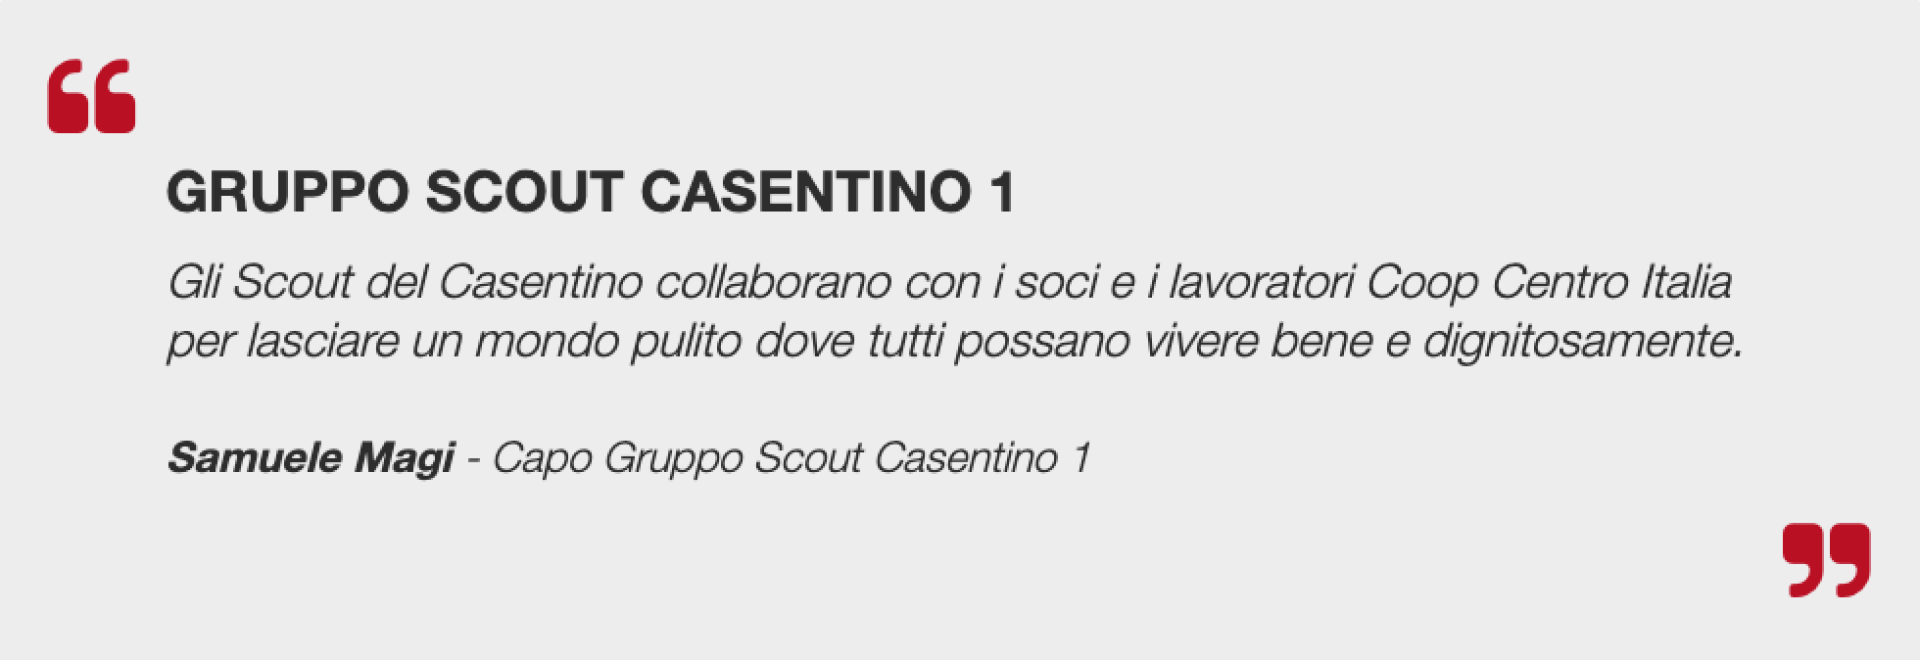 Gruppo Scout Casentino 1    Gli Scout del Casentino collaborano con i soci e i lavoratori Coop Centro Italia per lasciare un mondo pulito dove tutti possano vivere bene e dignitosamente.    Samuele Magi  - Capo Gruppo Scout Casentino 1    